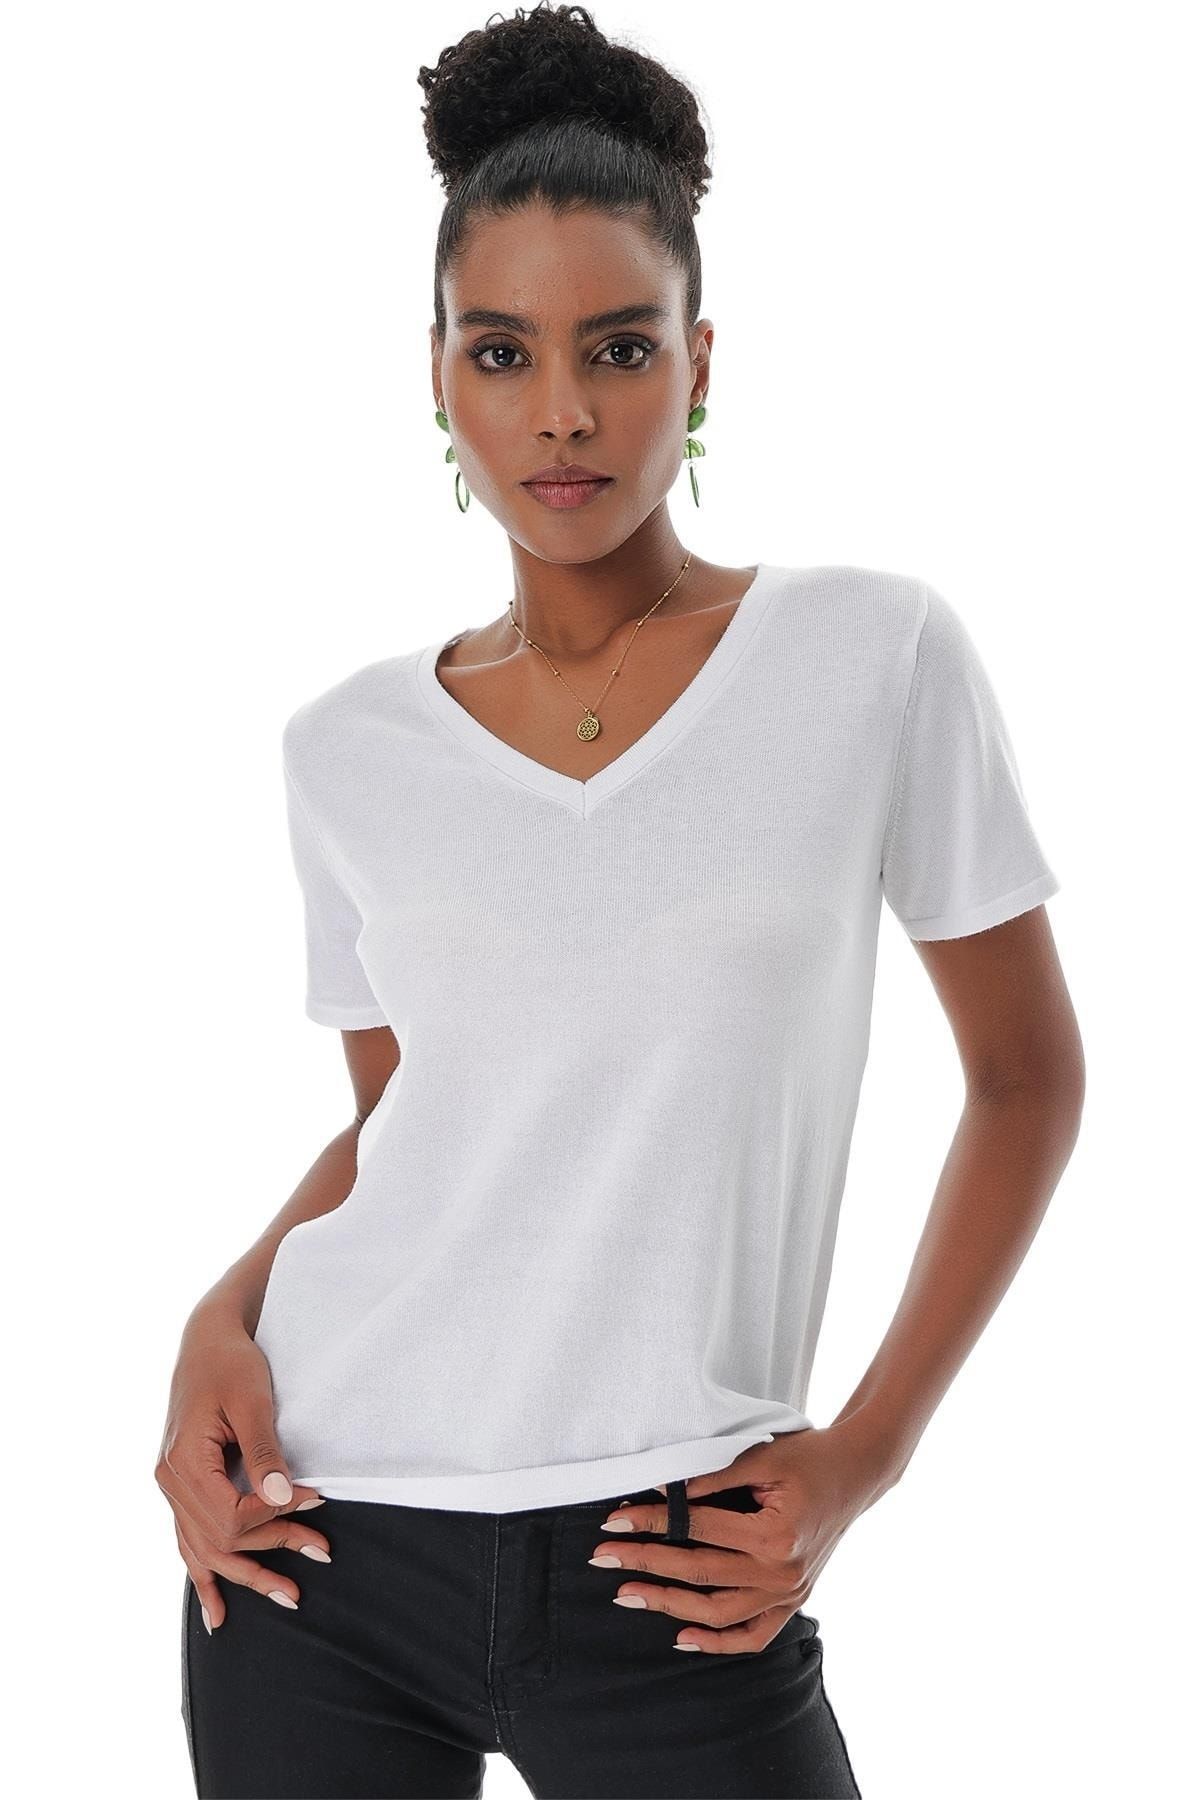 CHUBA Kadın V Yaka Pamuklu Basic Ince Triko T-shirt Beyaz 23s1003